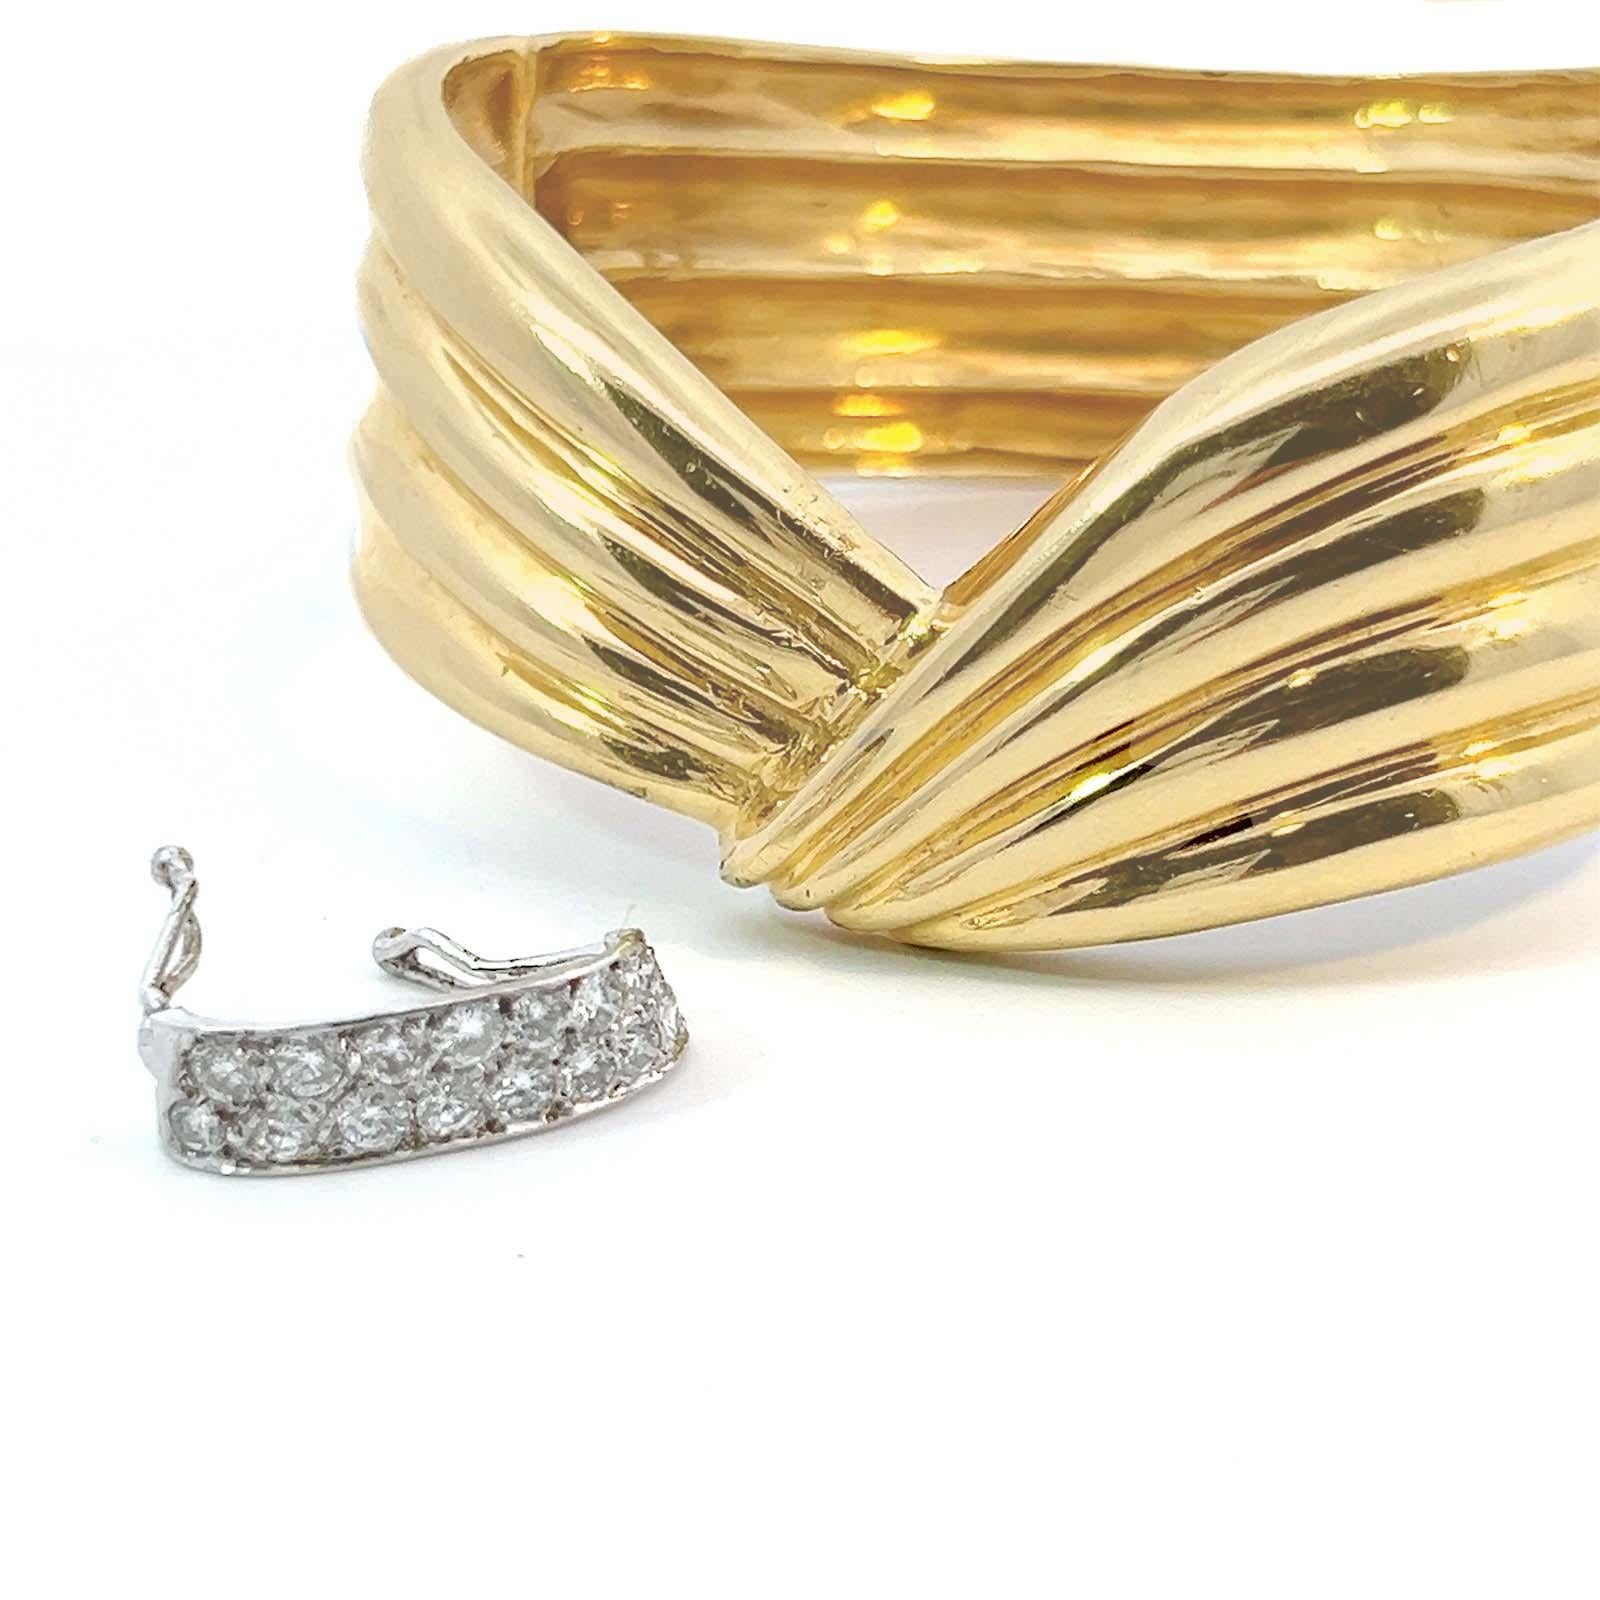 Fin du 20e siècle, années 1980, bracelet bangle en diamant vintage de 0,75 ctw. en or jaune et blanc 14k. Le design de style jour/nuit présente un bracelet cintré en or jaune 14k étincelant avec une bande de 15 diamants ronds de taille brillant, de